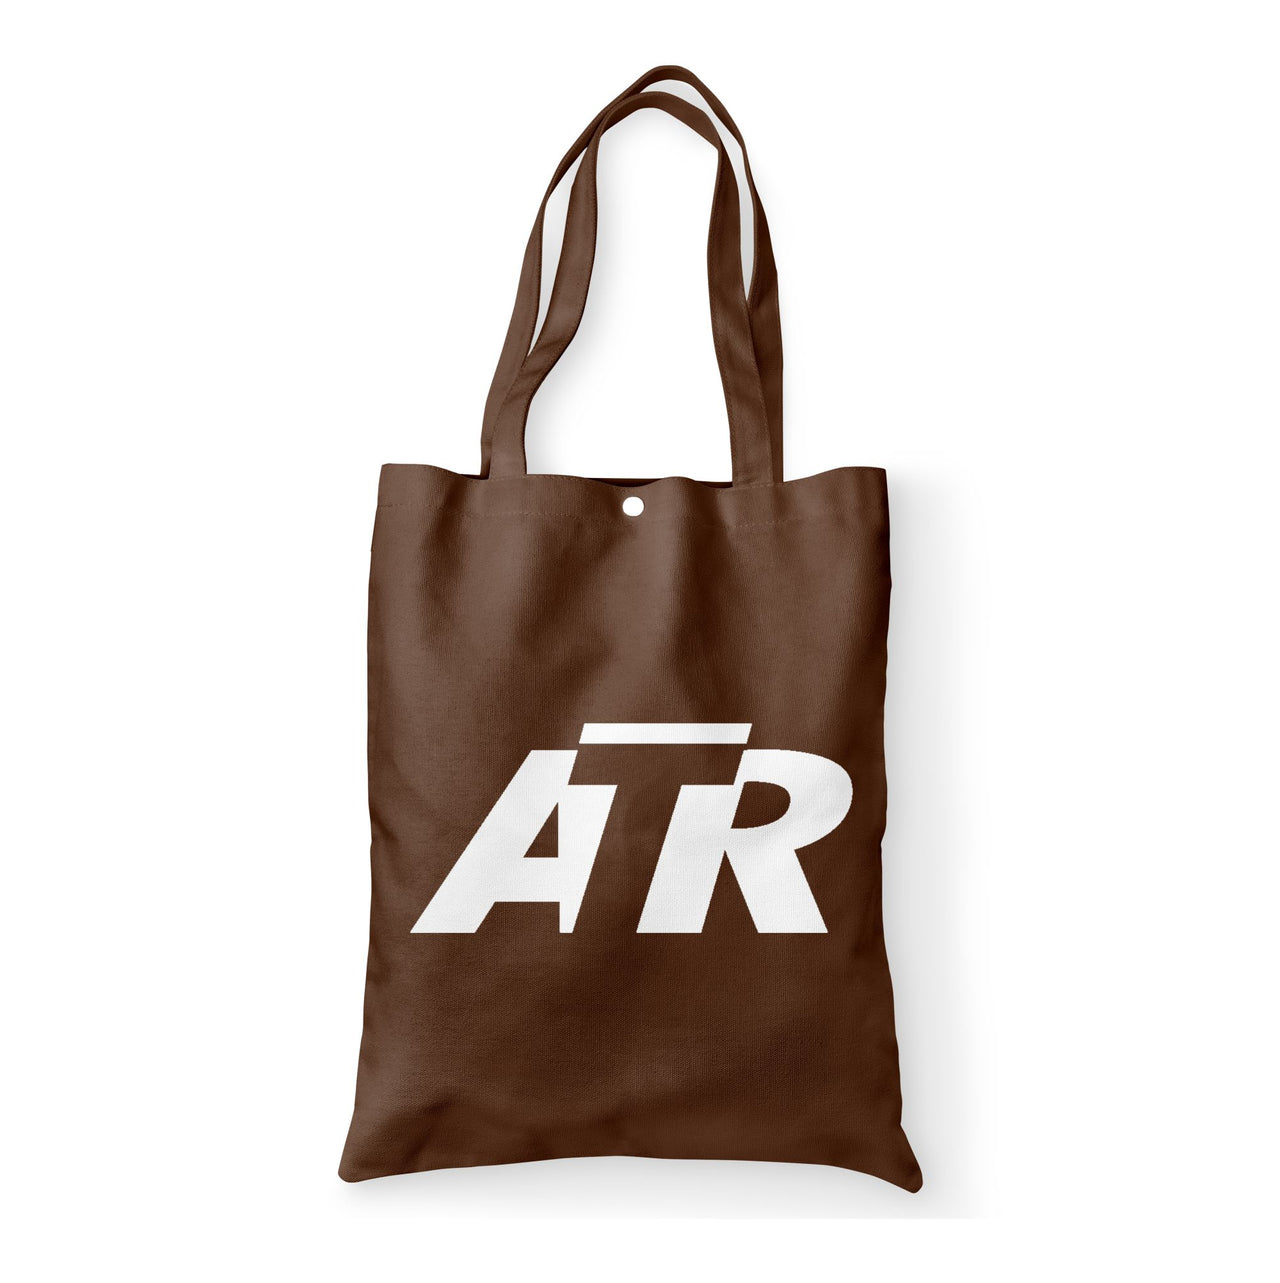 ATR & Text Designed Tote Bags